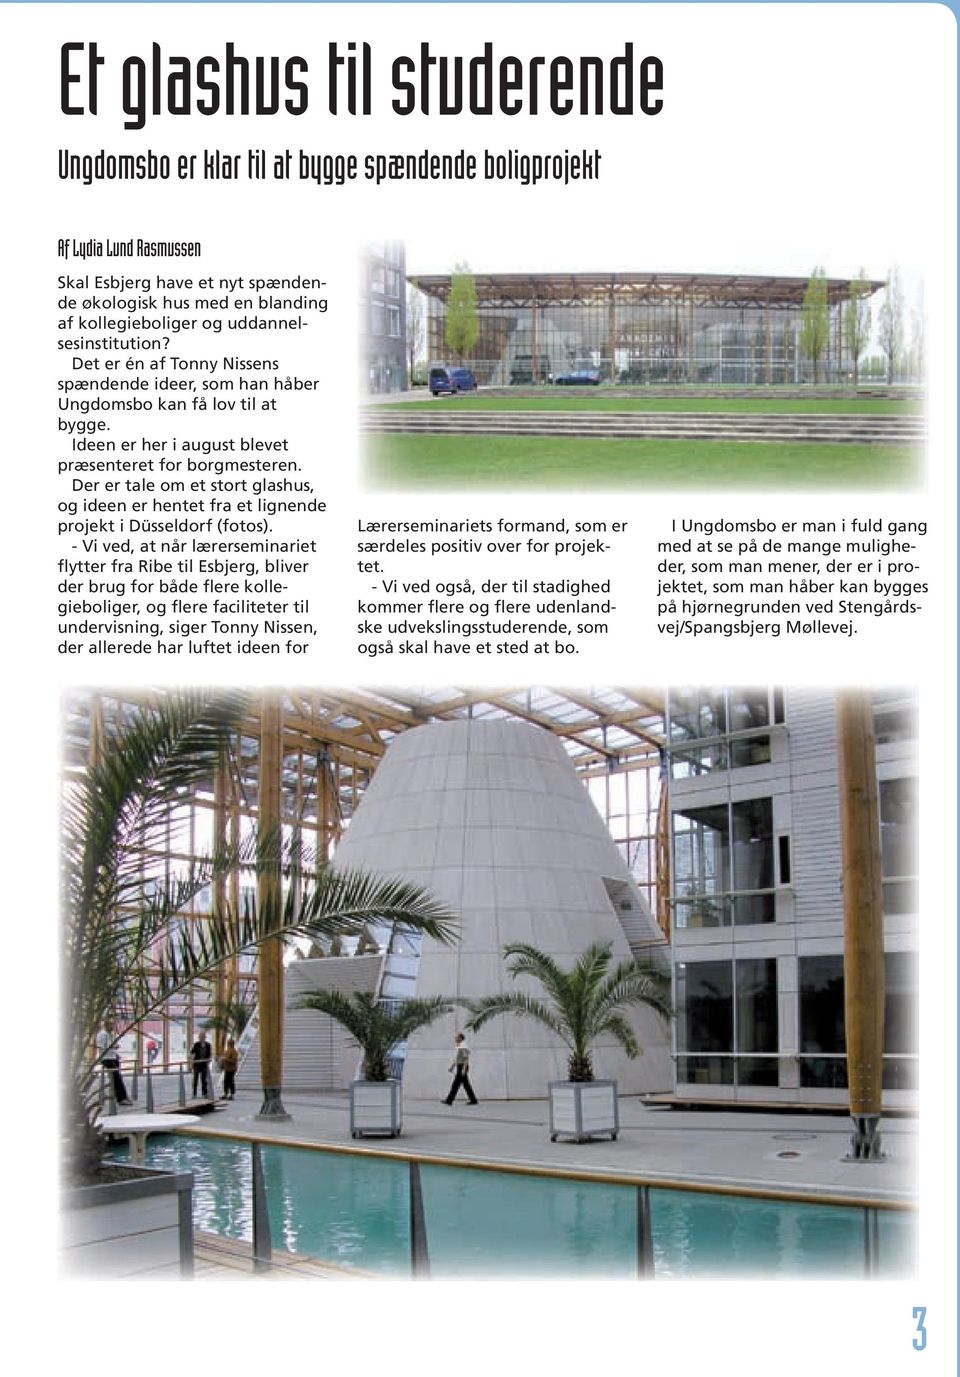 Der er tale om et stort glashus, og ideen er hentet fra et lignende projekt i Düsseldorf (fotos).